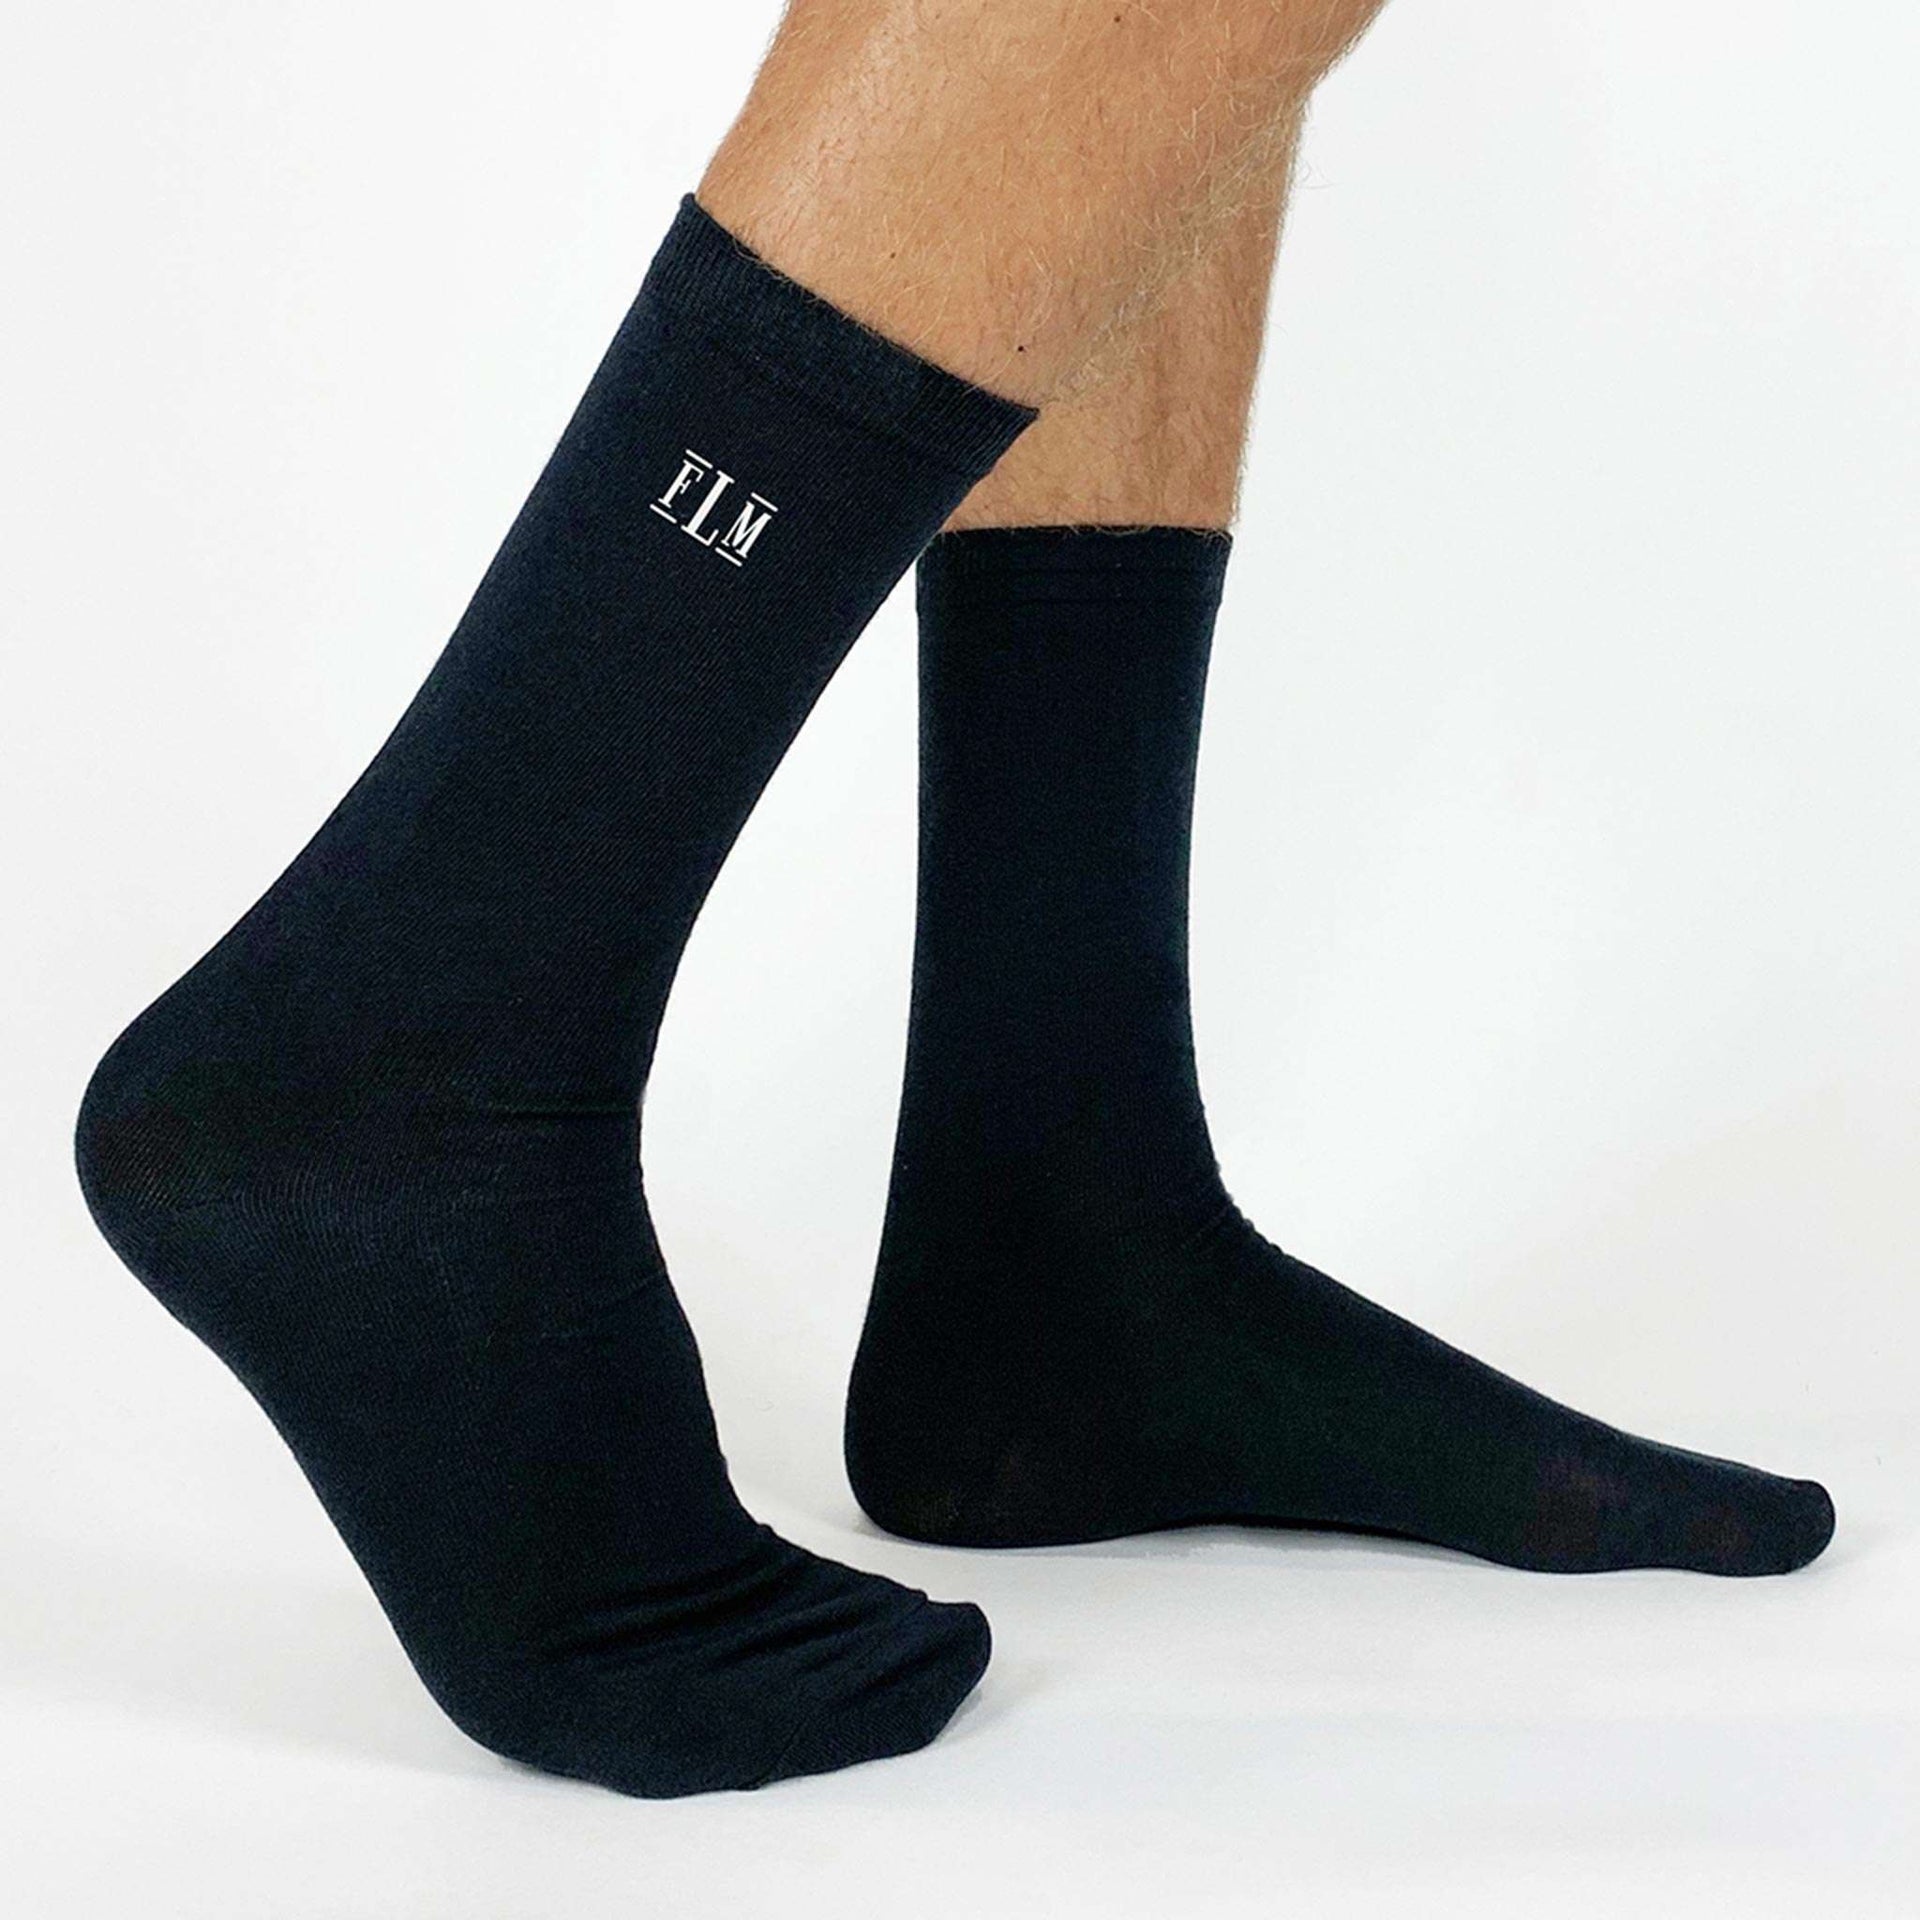 Monogrammed  custom printed socks sold as a gift set of 3 pairs of black crew socks